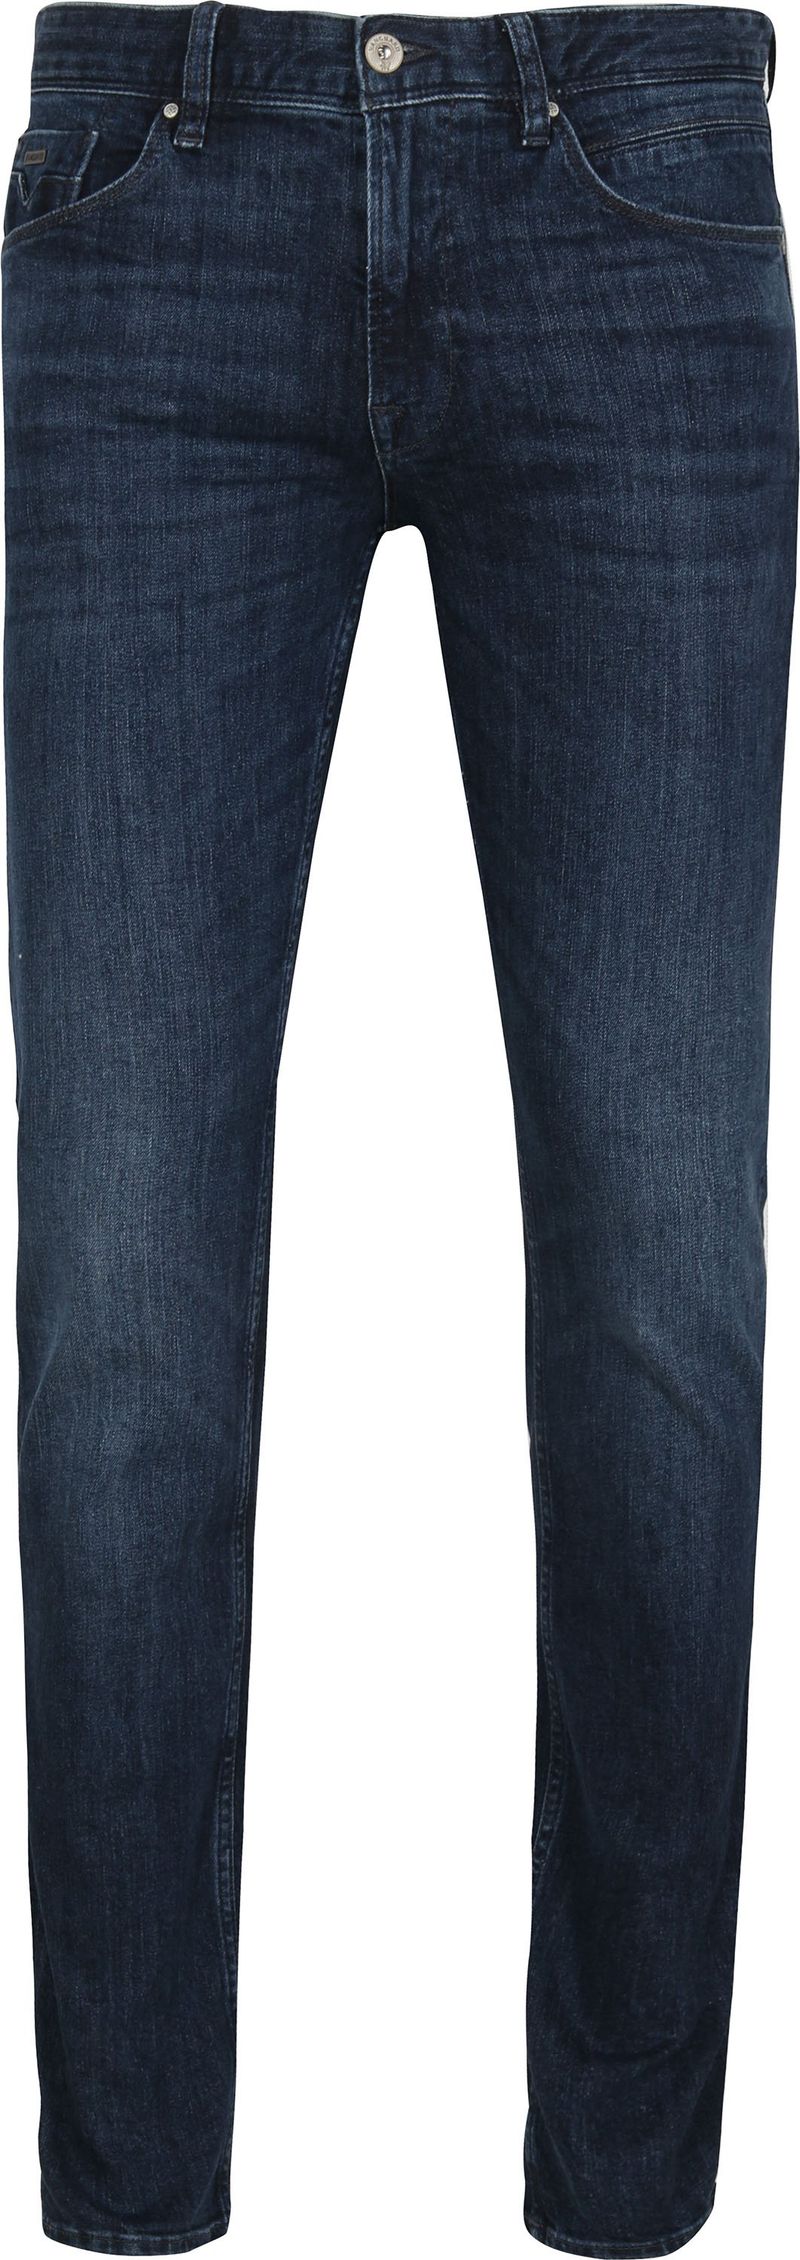 Vanguard Jeans V7 Rider Steel Washed Blau - Größe W 32 - L 36 günstig online kaufen